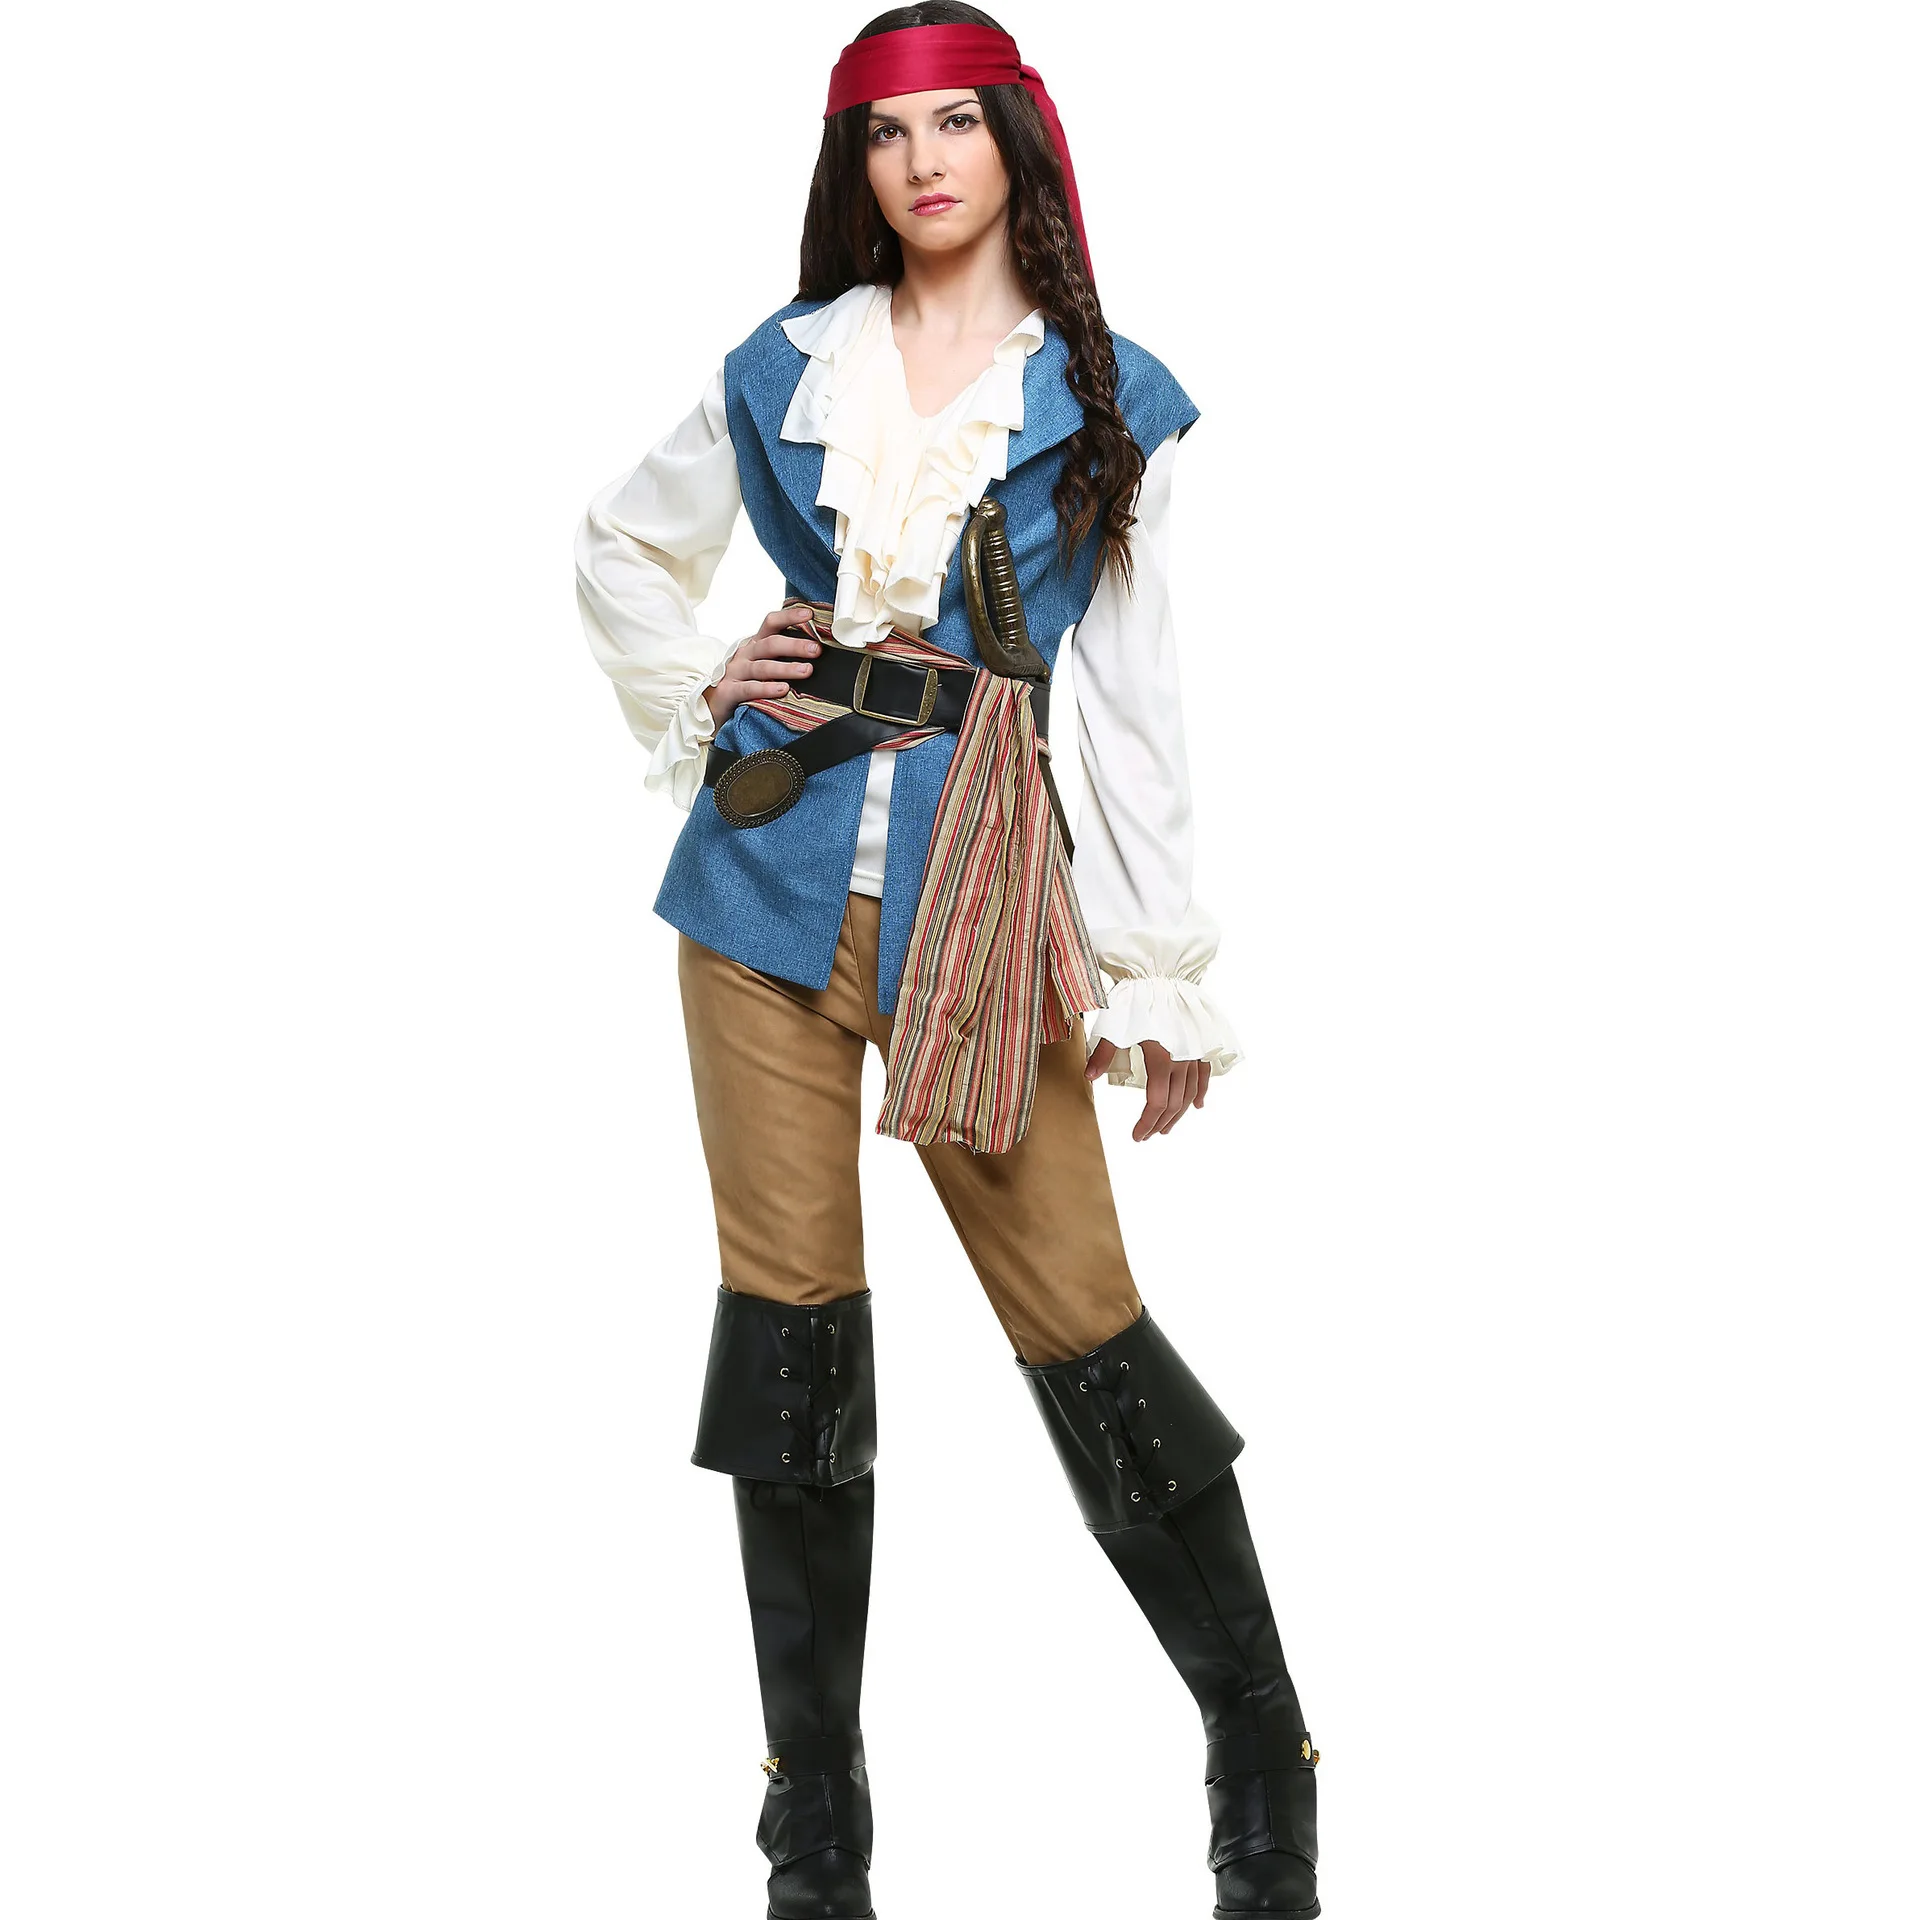 

M-XL женский костюм для косплея капитана пирата на Хэллоуин, полный комплект для взрослых пиратов Карибского моря, маскарадный костюм